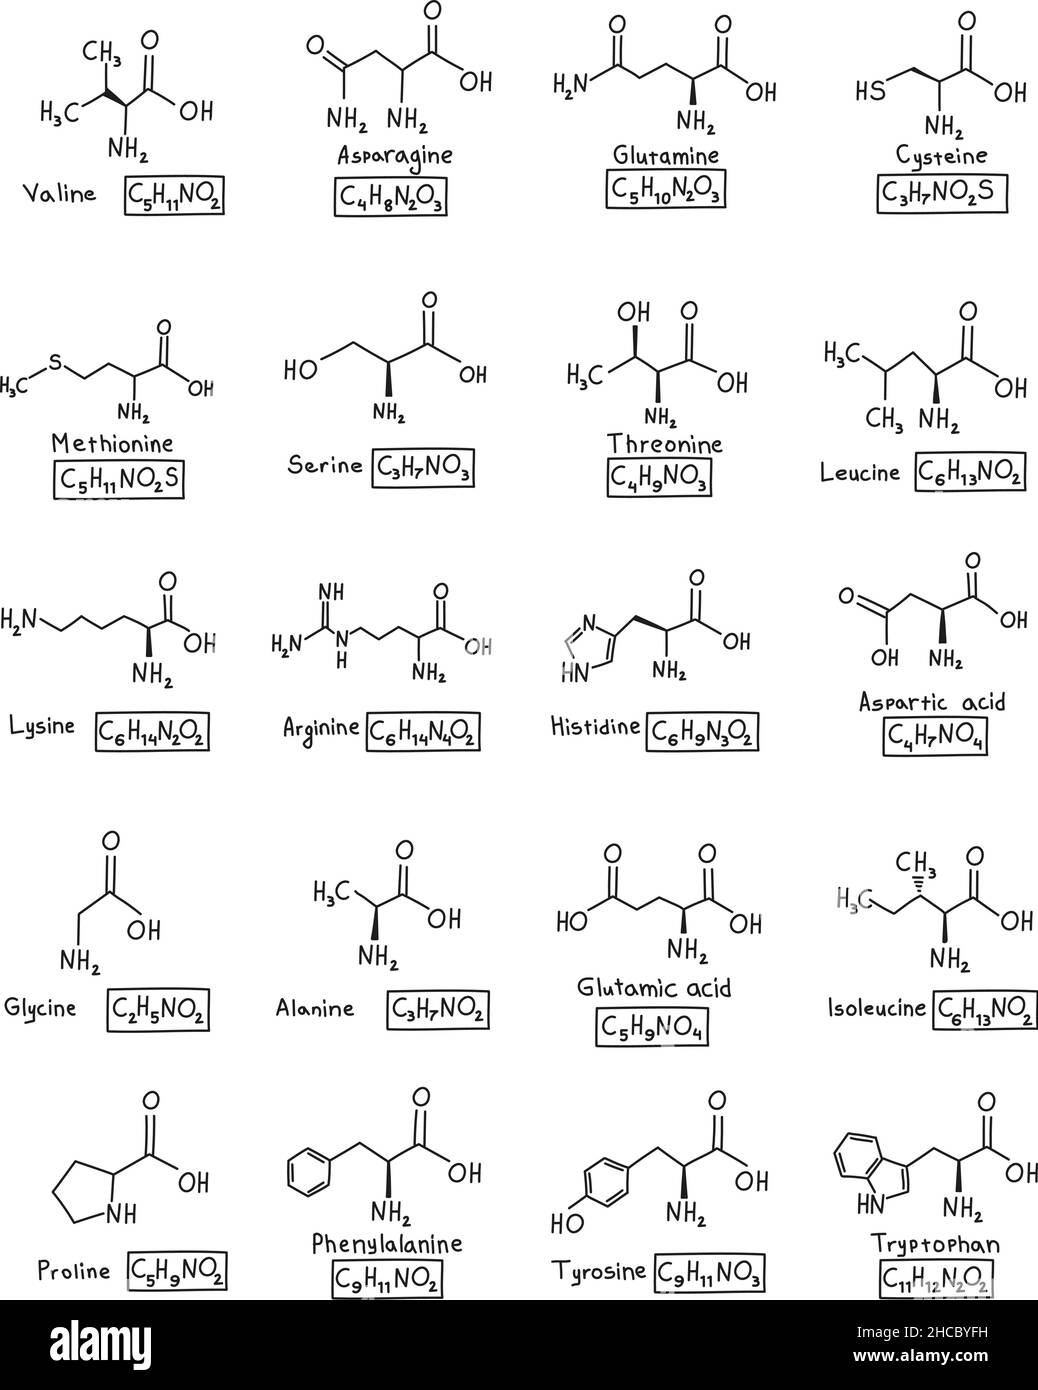 Formula molecolare chimica degli amminoacidi disegnata a mano nello stile di doodle isolato. Illustrazione Vettoriale